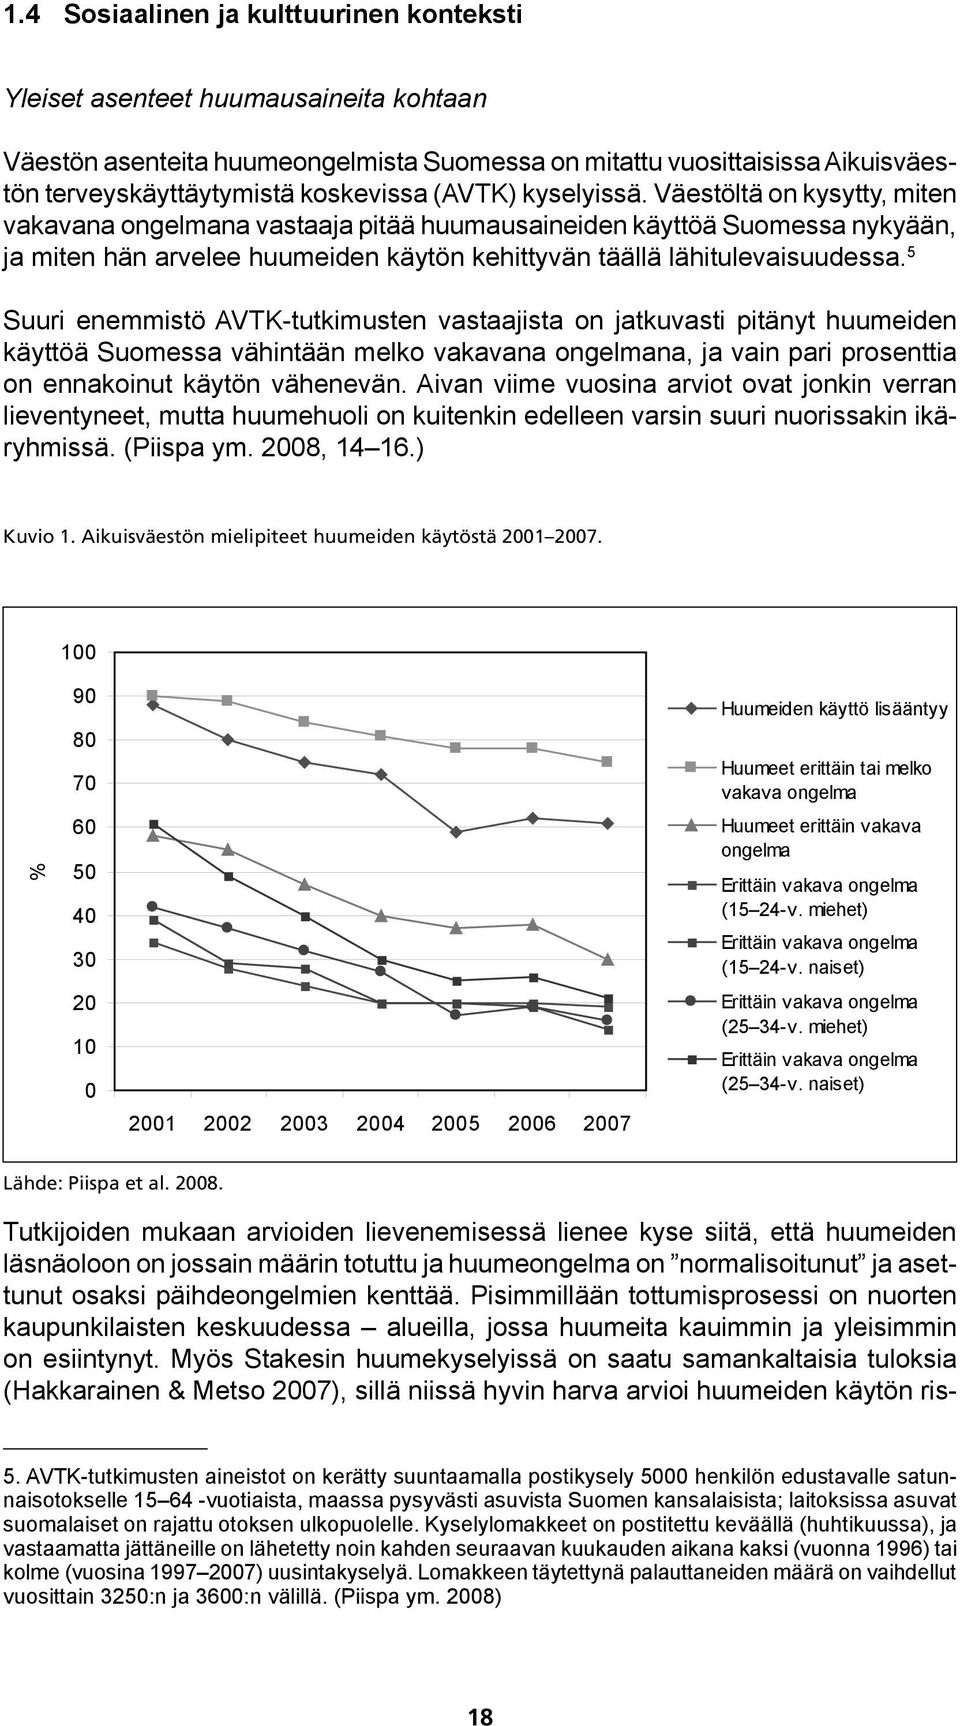 5 Suuri enemmistö AVTK-tutkimusten vastaajista on jatkuvasti pitänyt huumeiden käyttöä Suomessa vähintään melko vakavana ongelmana, ja vain pari prosenttia on ennakoinut käytön vähenevän.